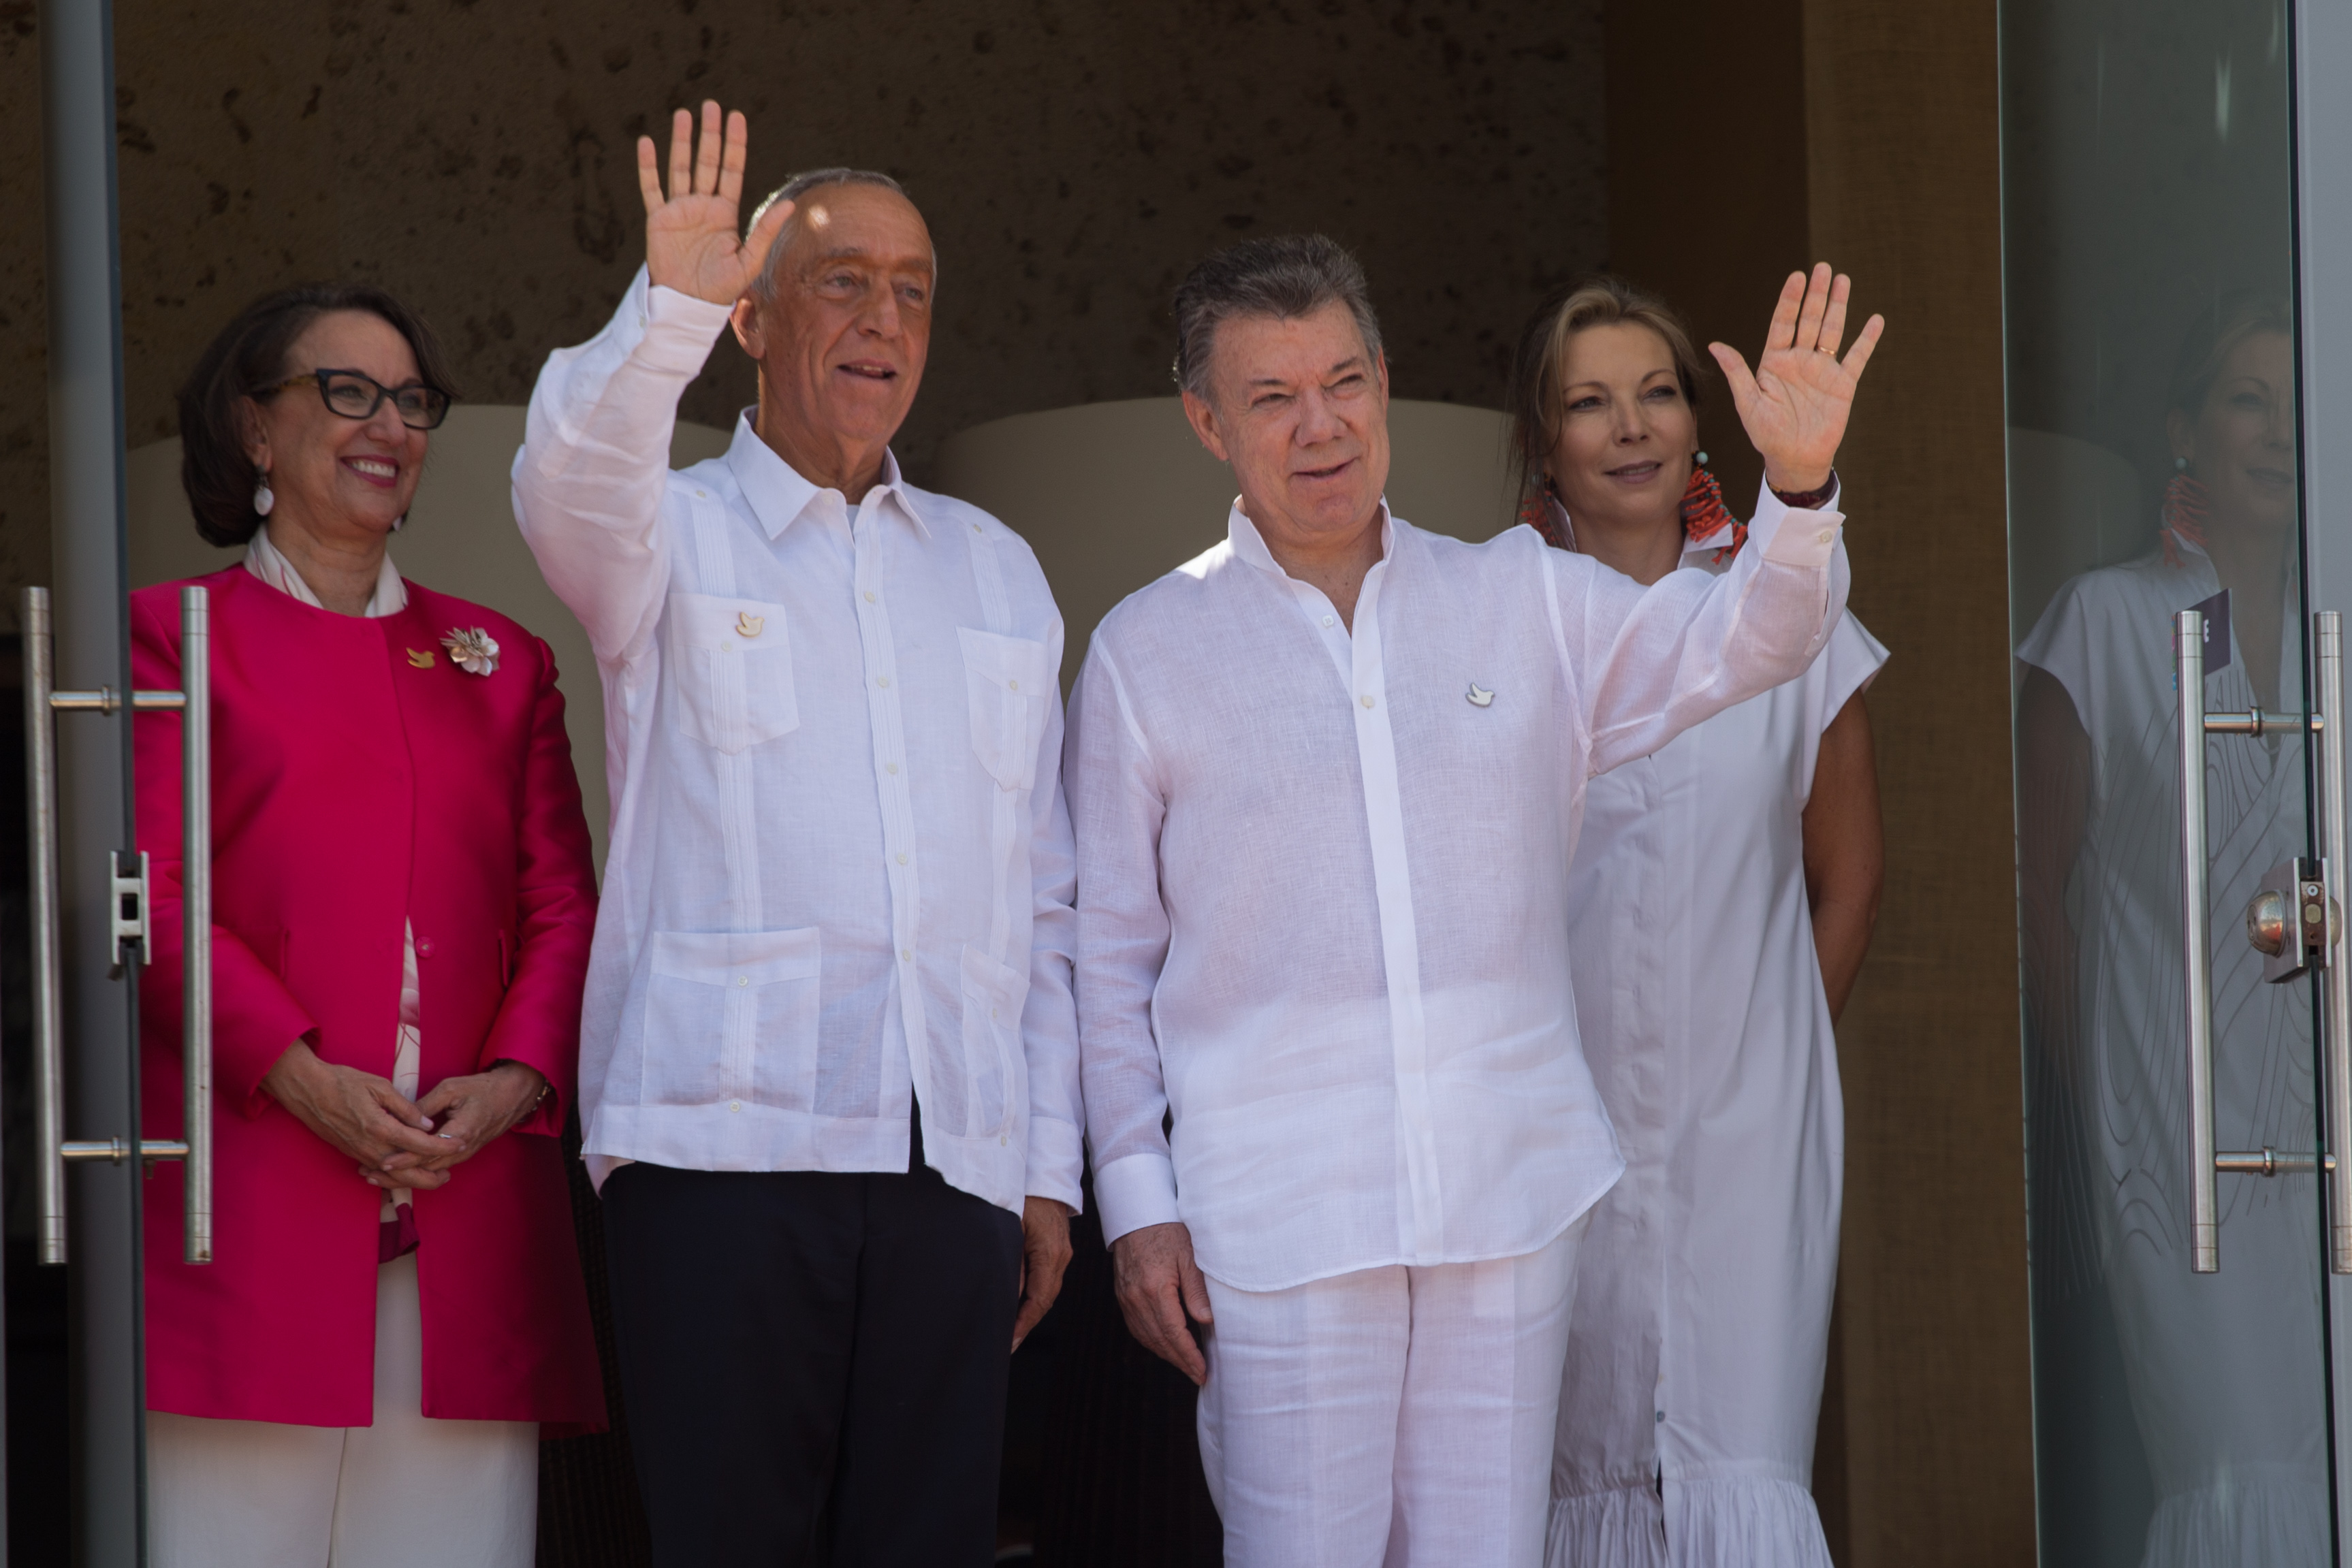  El Presidente Marcelo Rebelo De Sousa participará en la sesión de Jefes de Estado y de Gobierno de la versión 25 de la Cumbre Iberoamericana que se realiza en Cartagena.